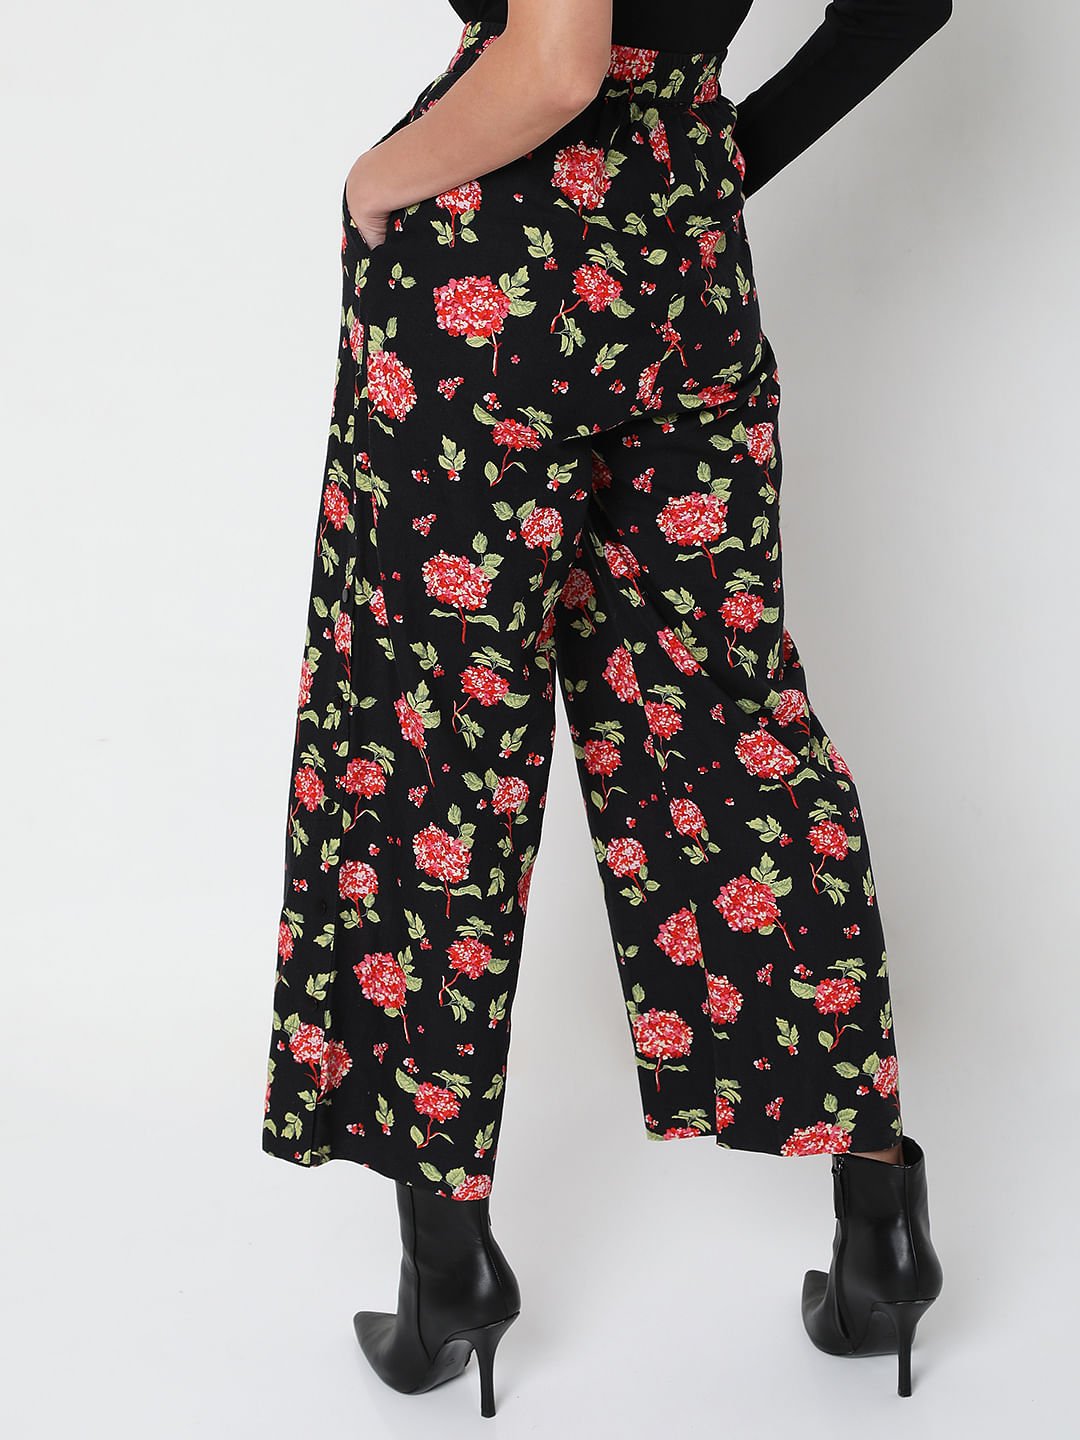 Topman Classic Fit Floral Print Suit Trousers  Mens floral trousers Mens  casual outfits Mens plaid pants